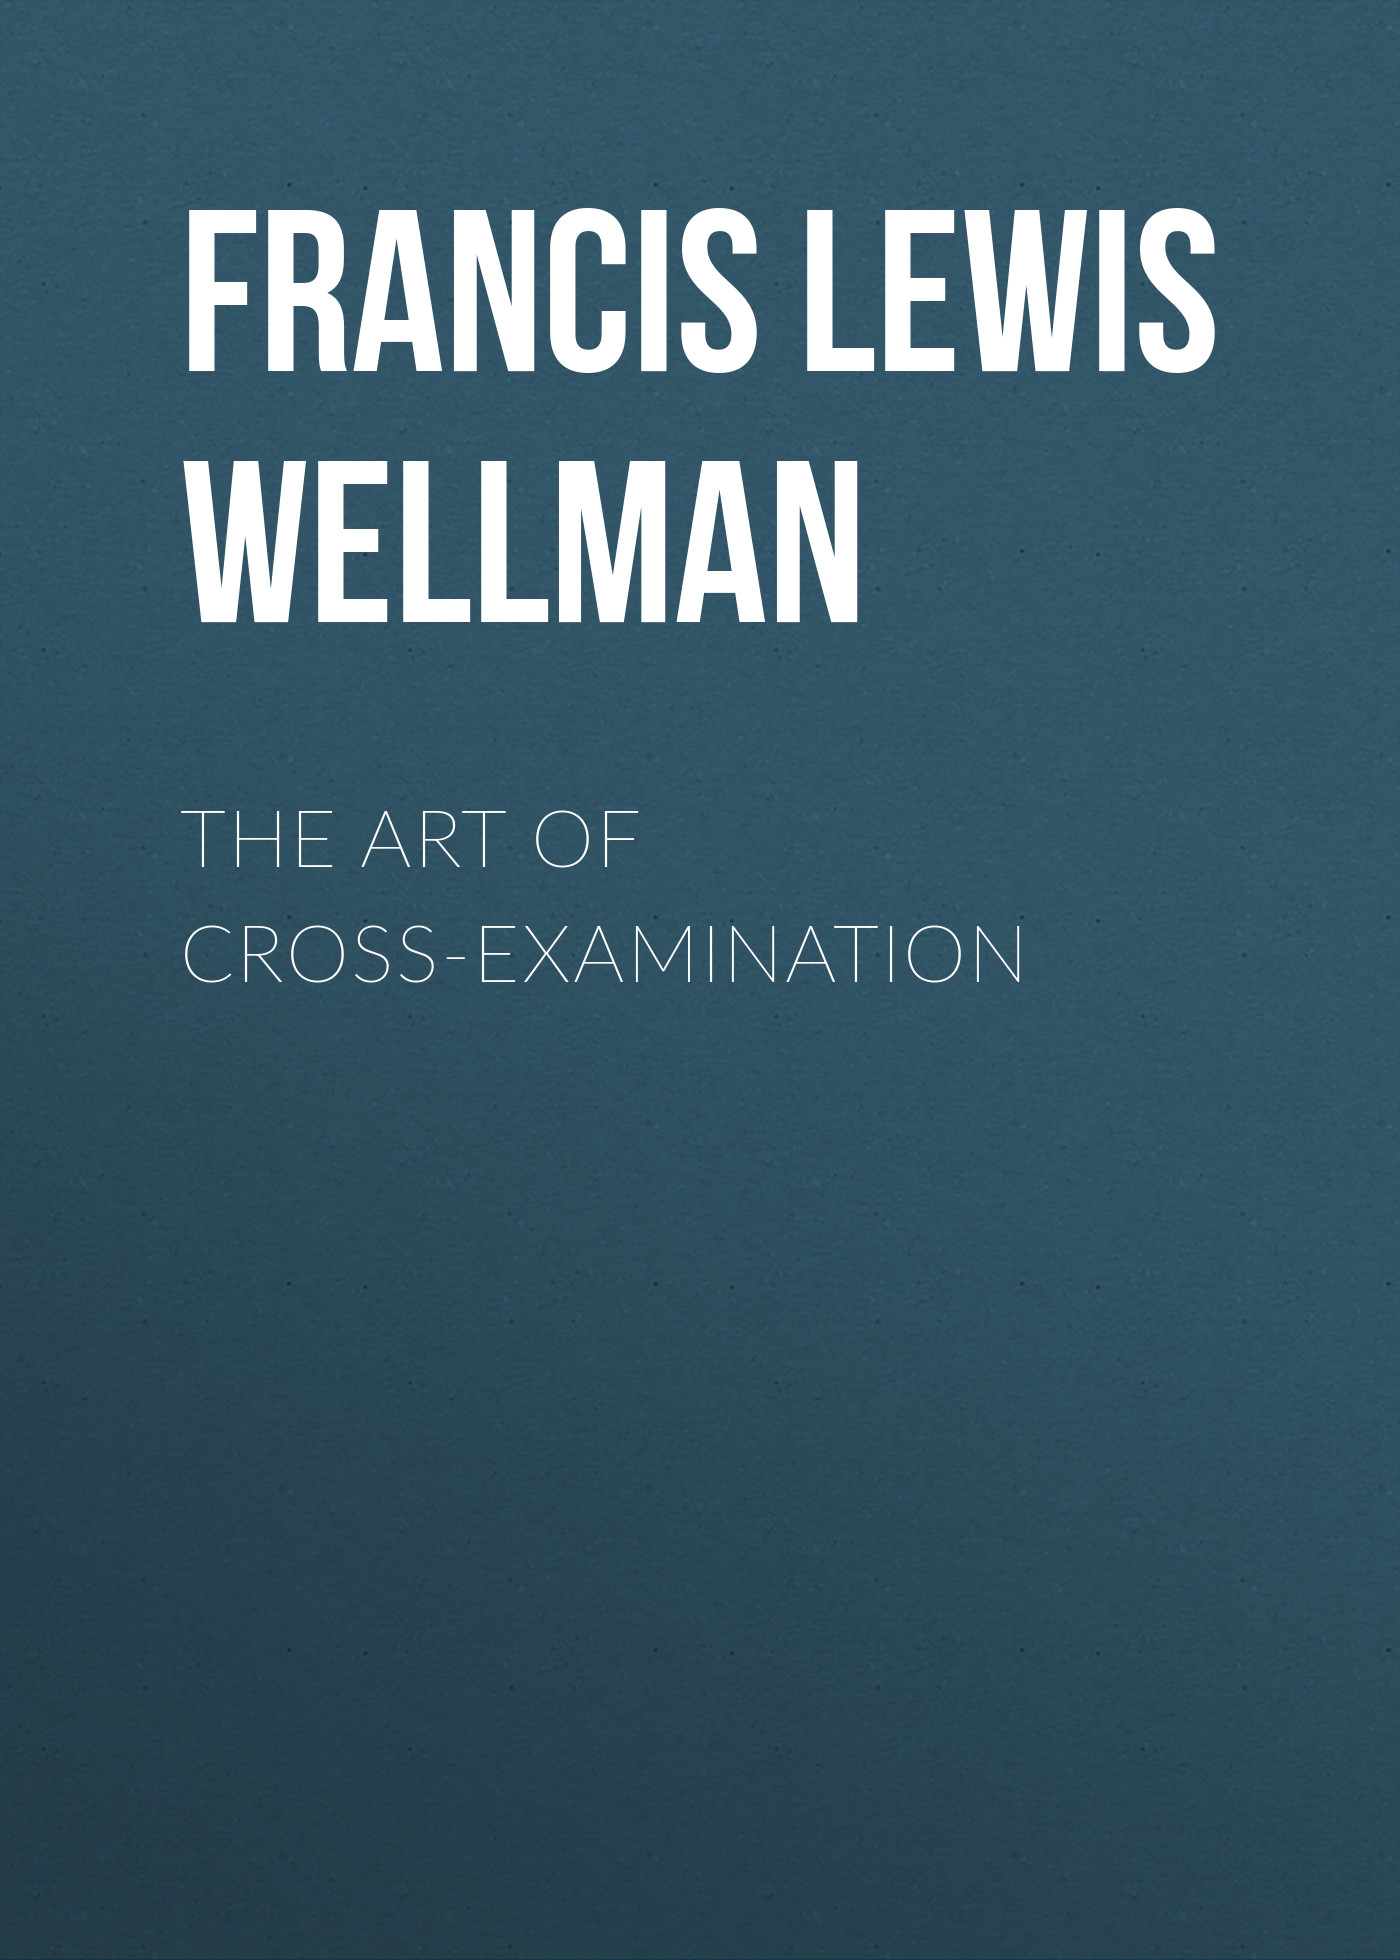 Книга The Art of Cross-Examination из серии , созданная Francis Lewis Wellman, может относится к жанру Зарубежная образовательная литература, Юриспруденция, право. Стоимость электронной книги The Art of Cross-Examination с идентификатором 34336122 составляет 0 руб.